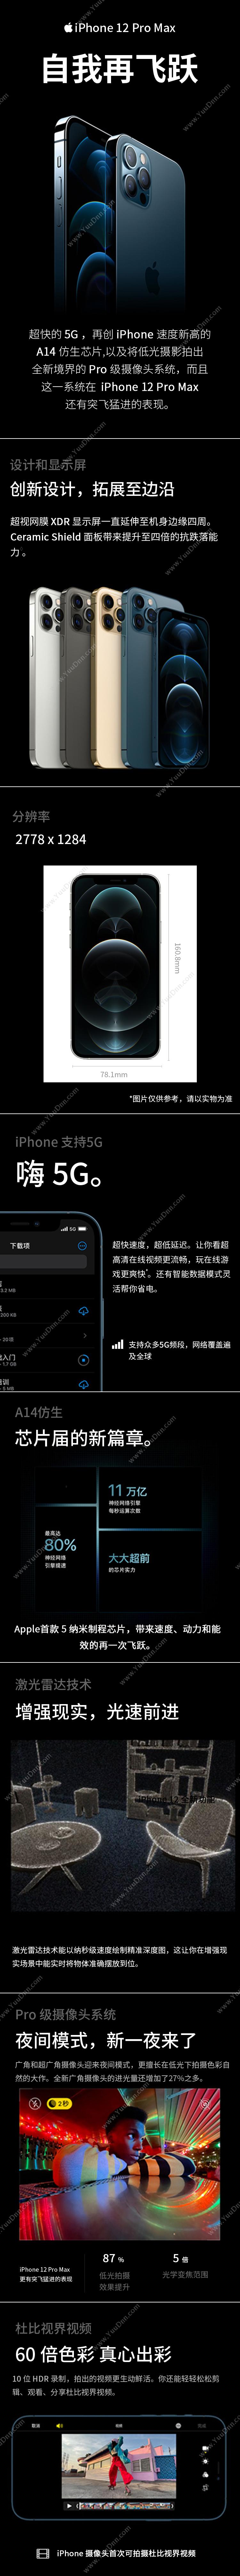 苹果 Apple iPhone 12 ProMax (MGC53CH/A) 256G 银色 移动联通电信5G手机 手机